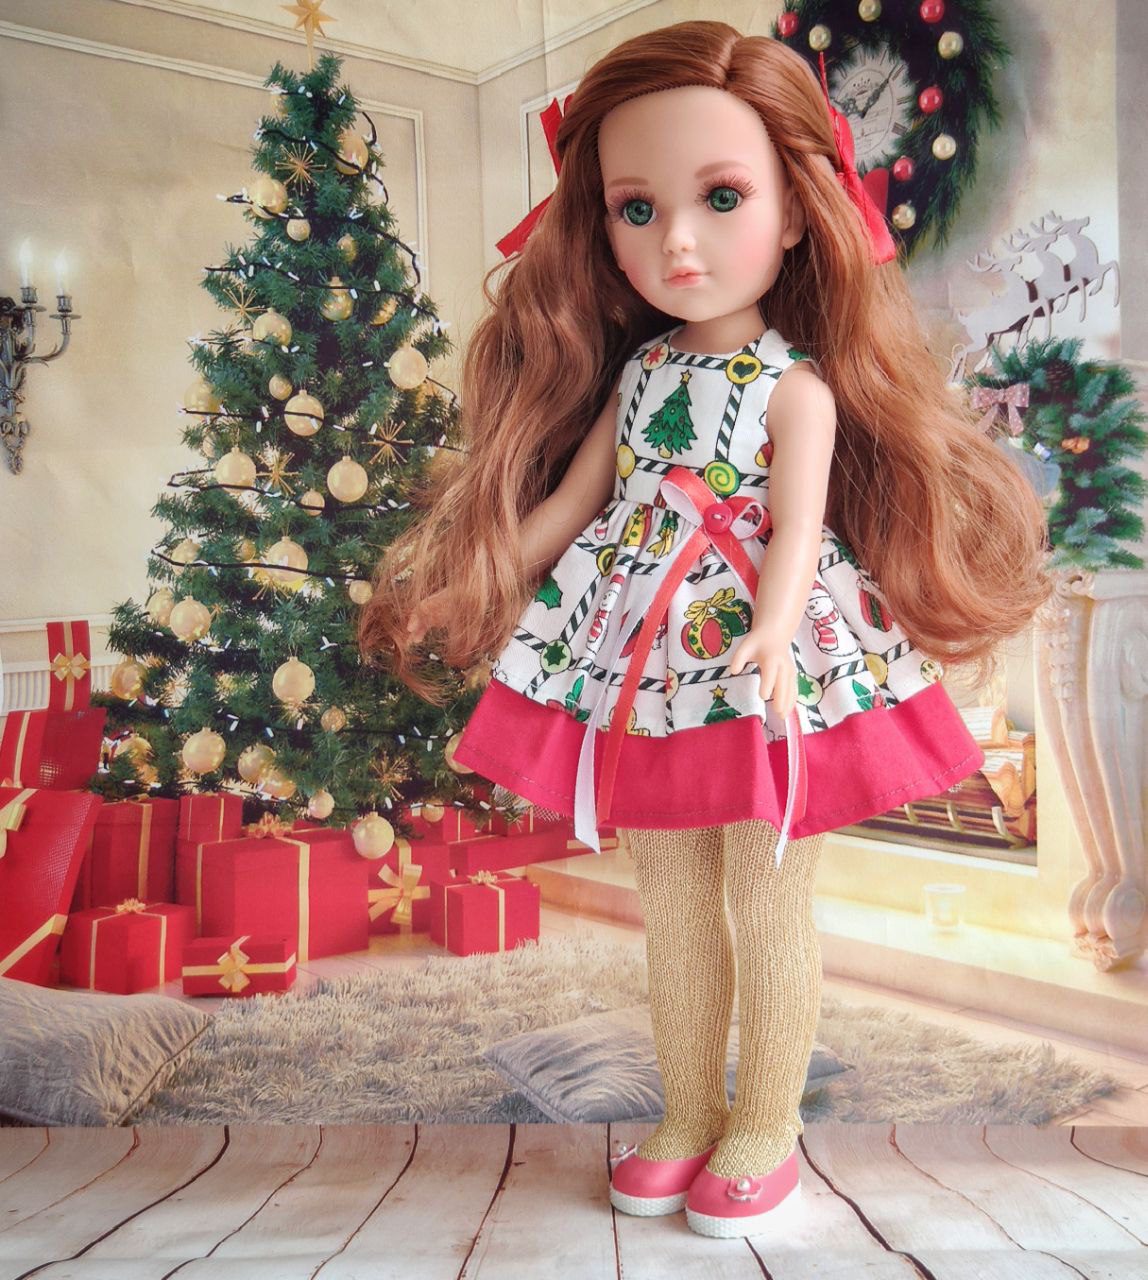 Vidal Rojas, кукла Джуно в новогоднем наряде, рост 35 см